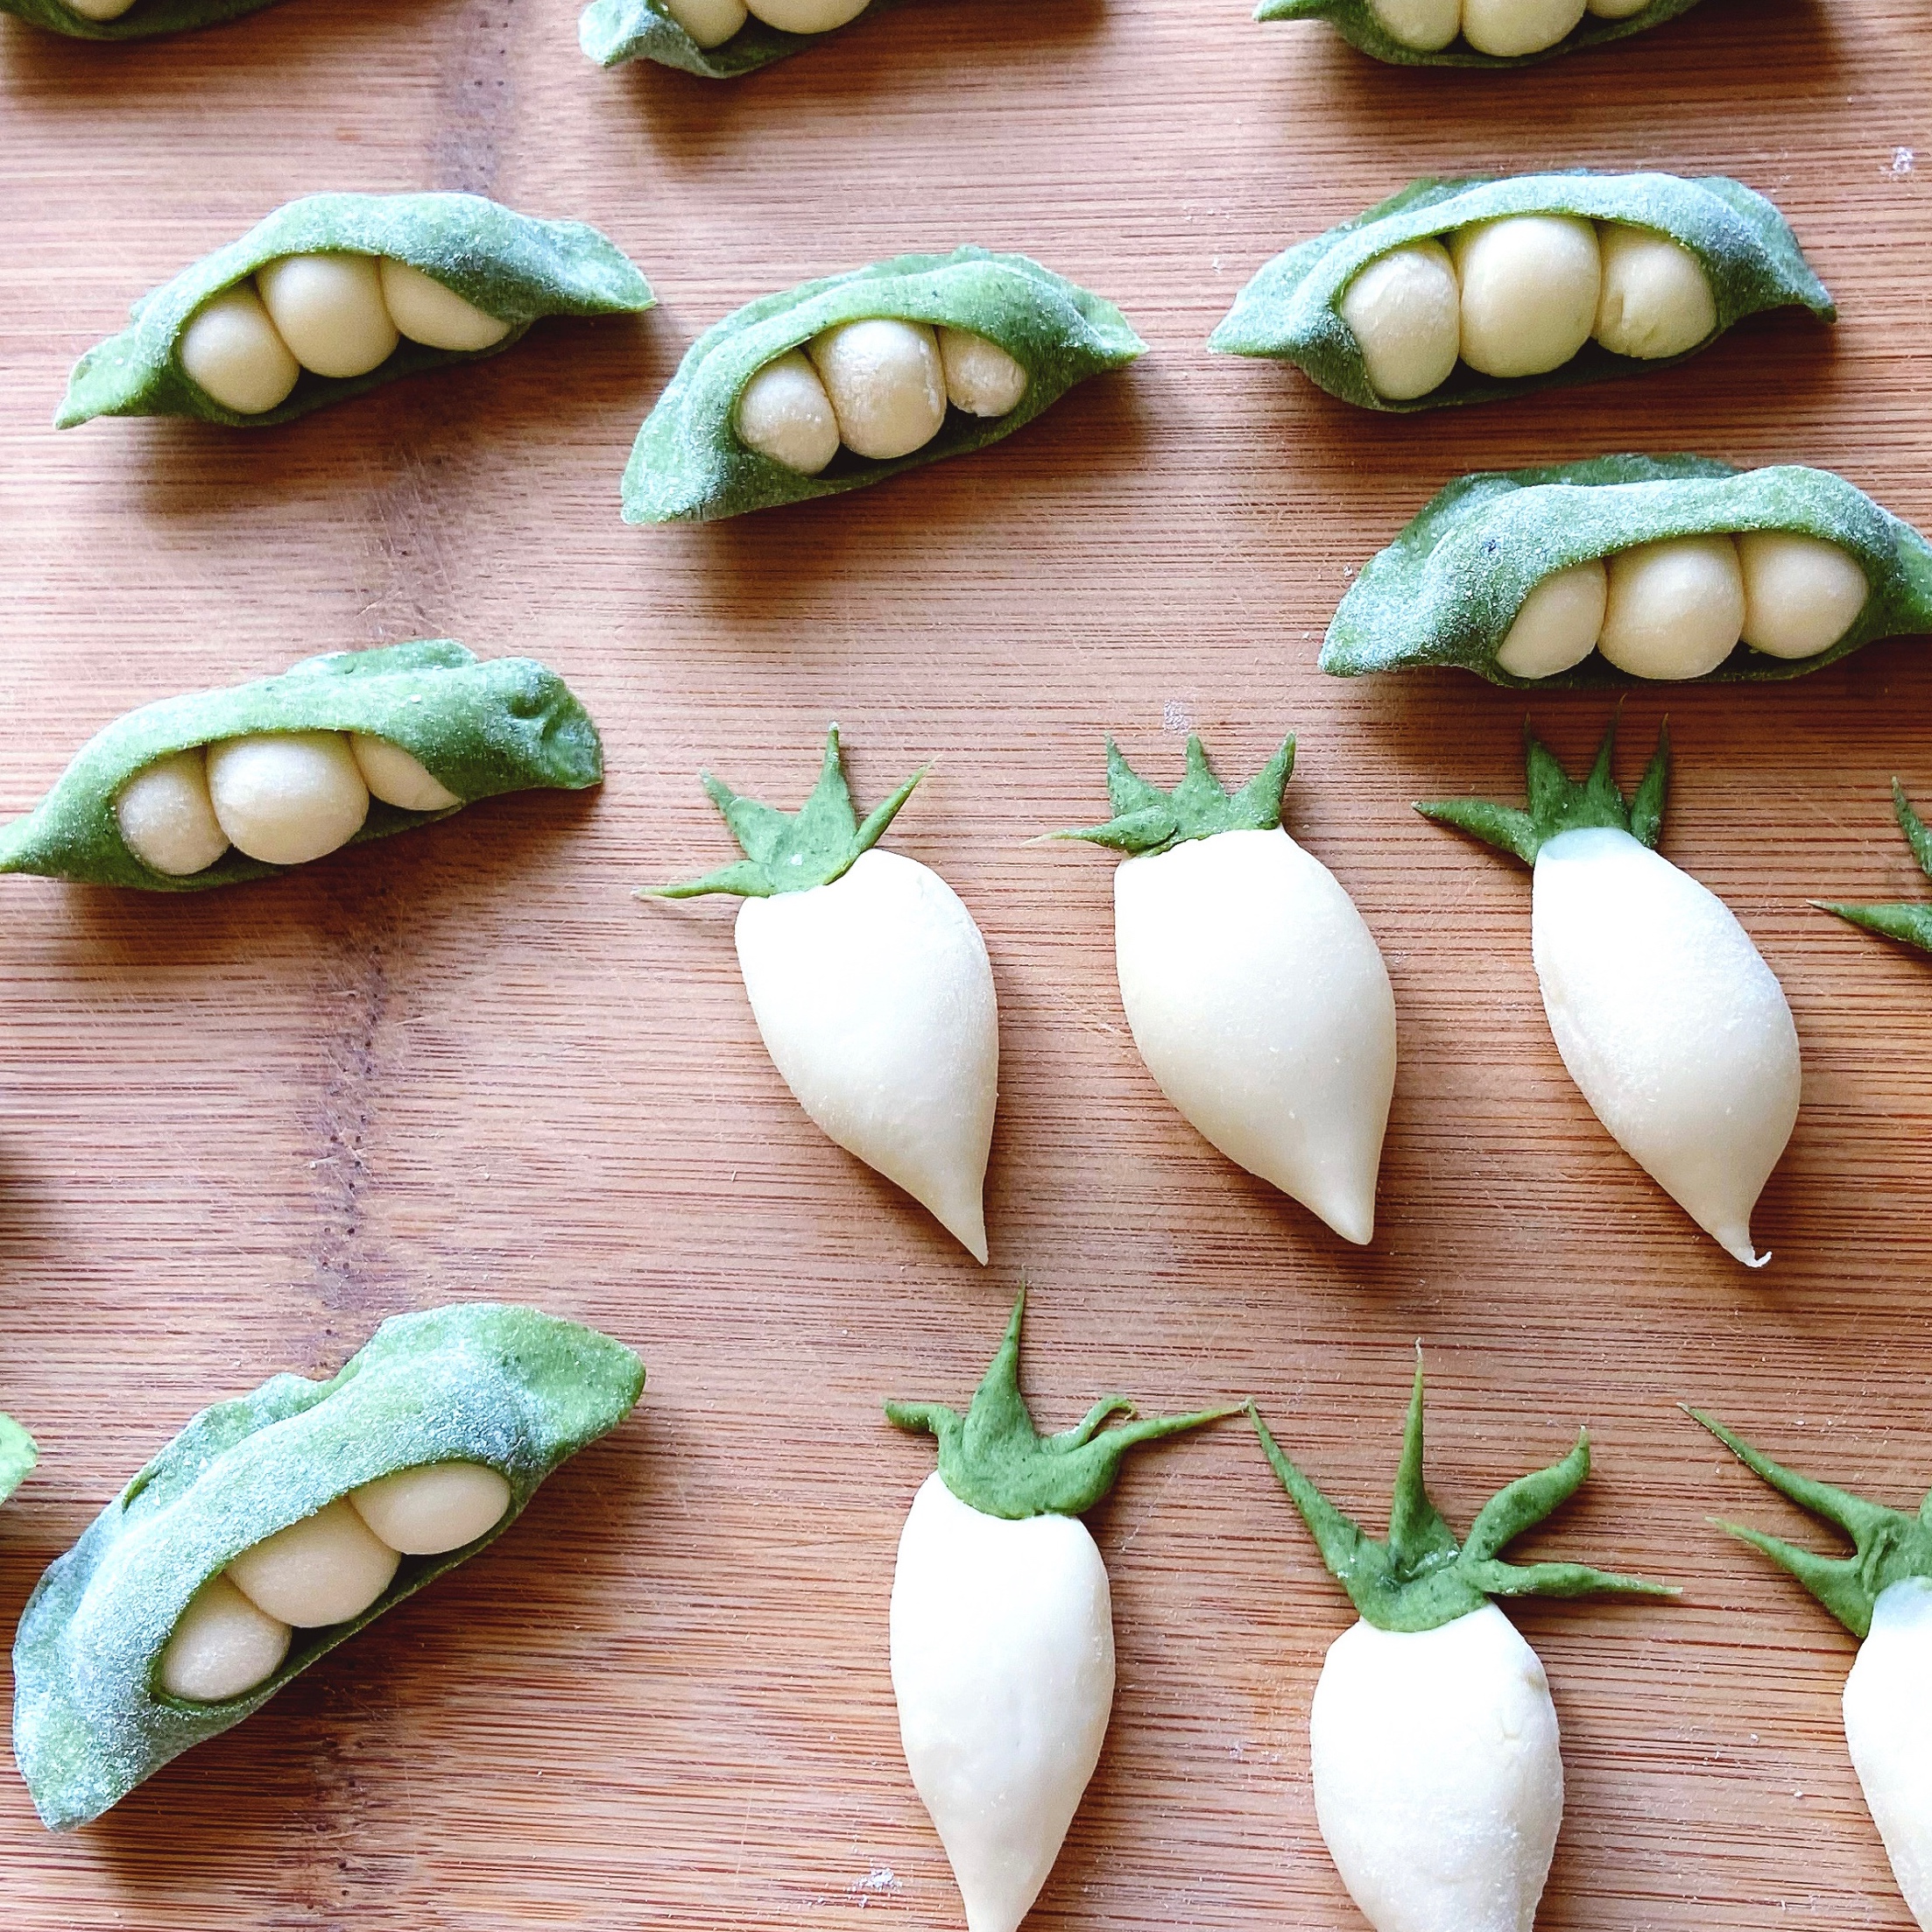 豌豆造型菠菜馒头